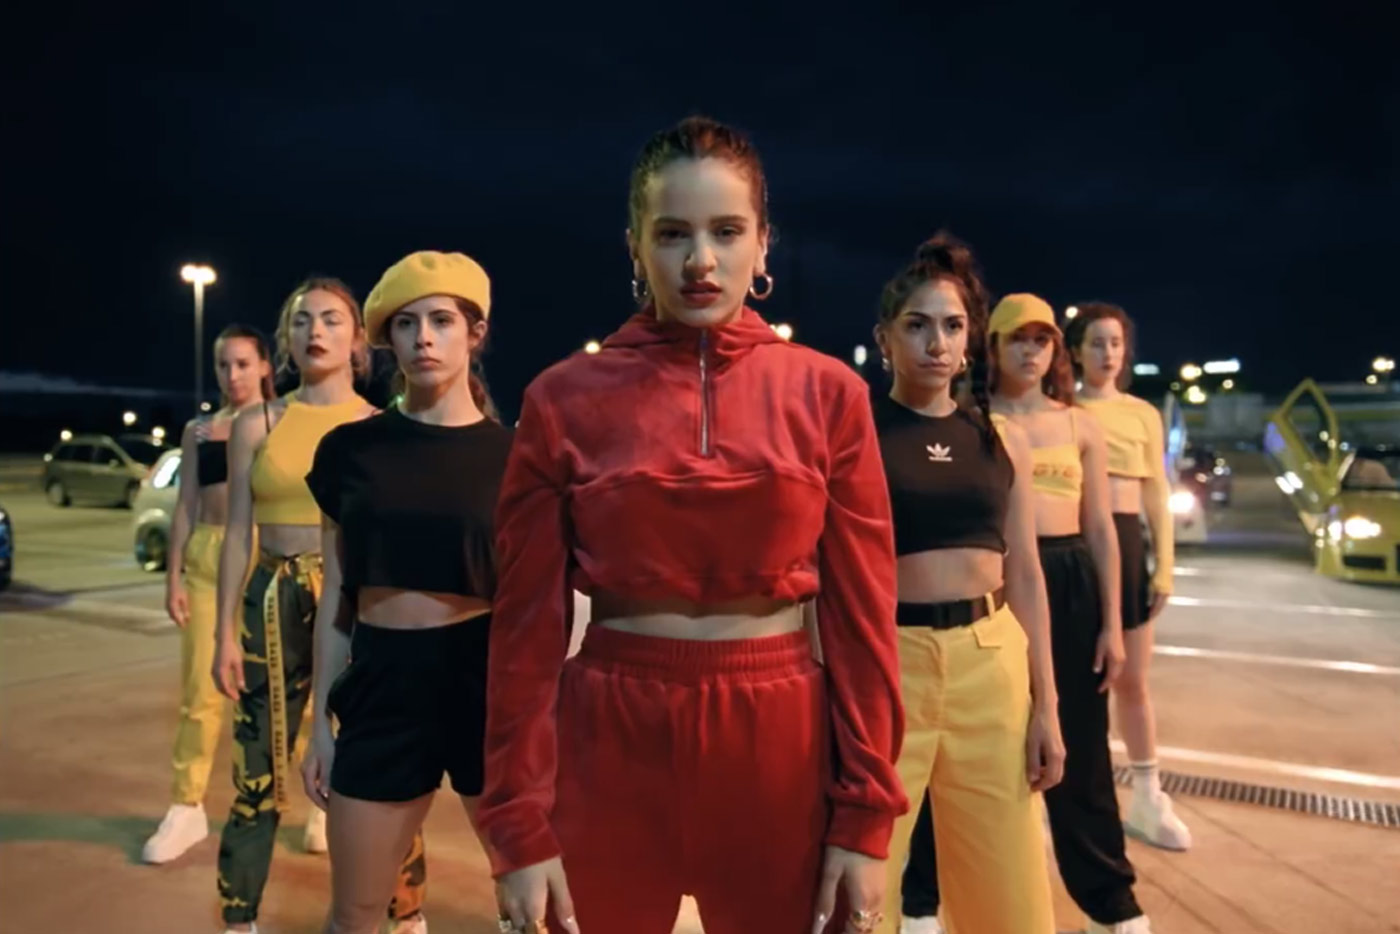 Rosalía lanza "Malamente", primer single y videoclip de "El mal querer"